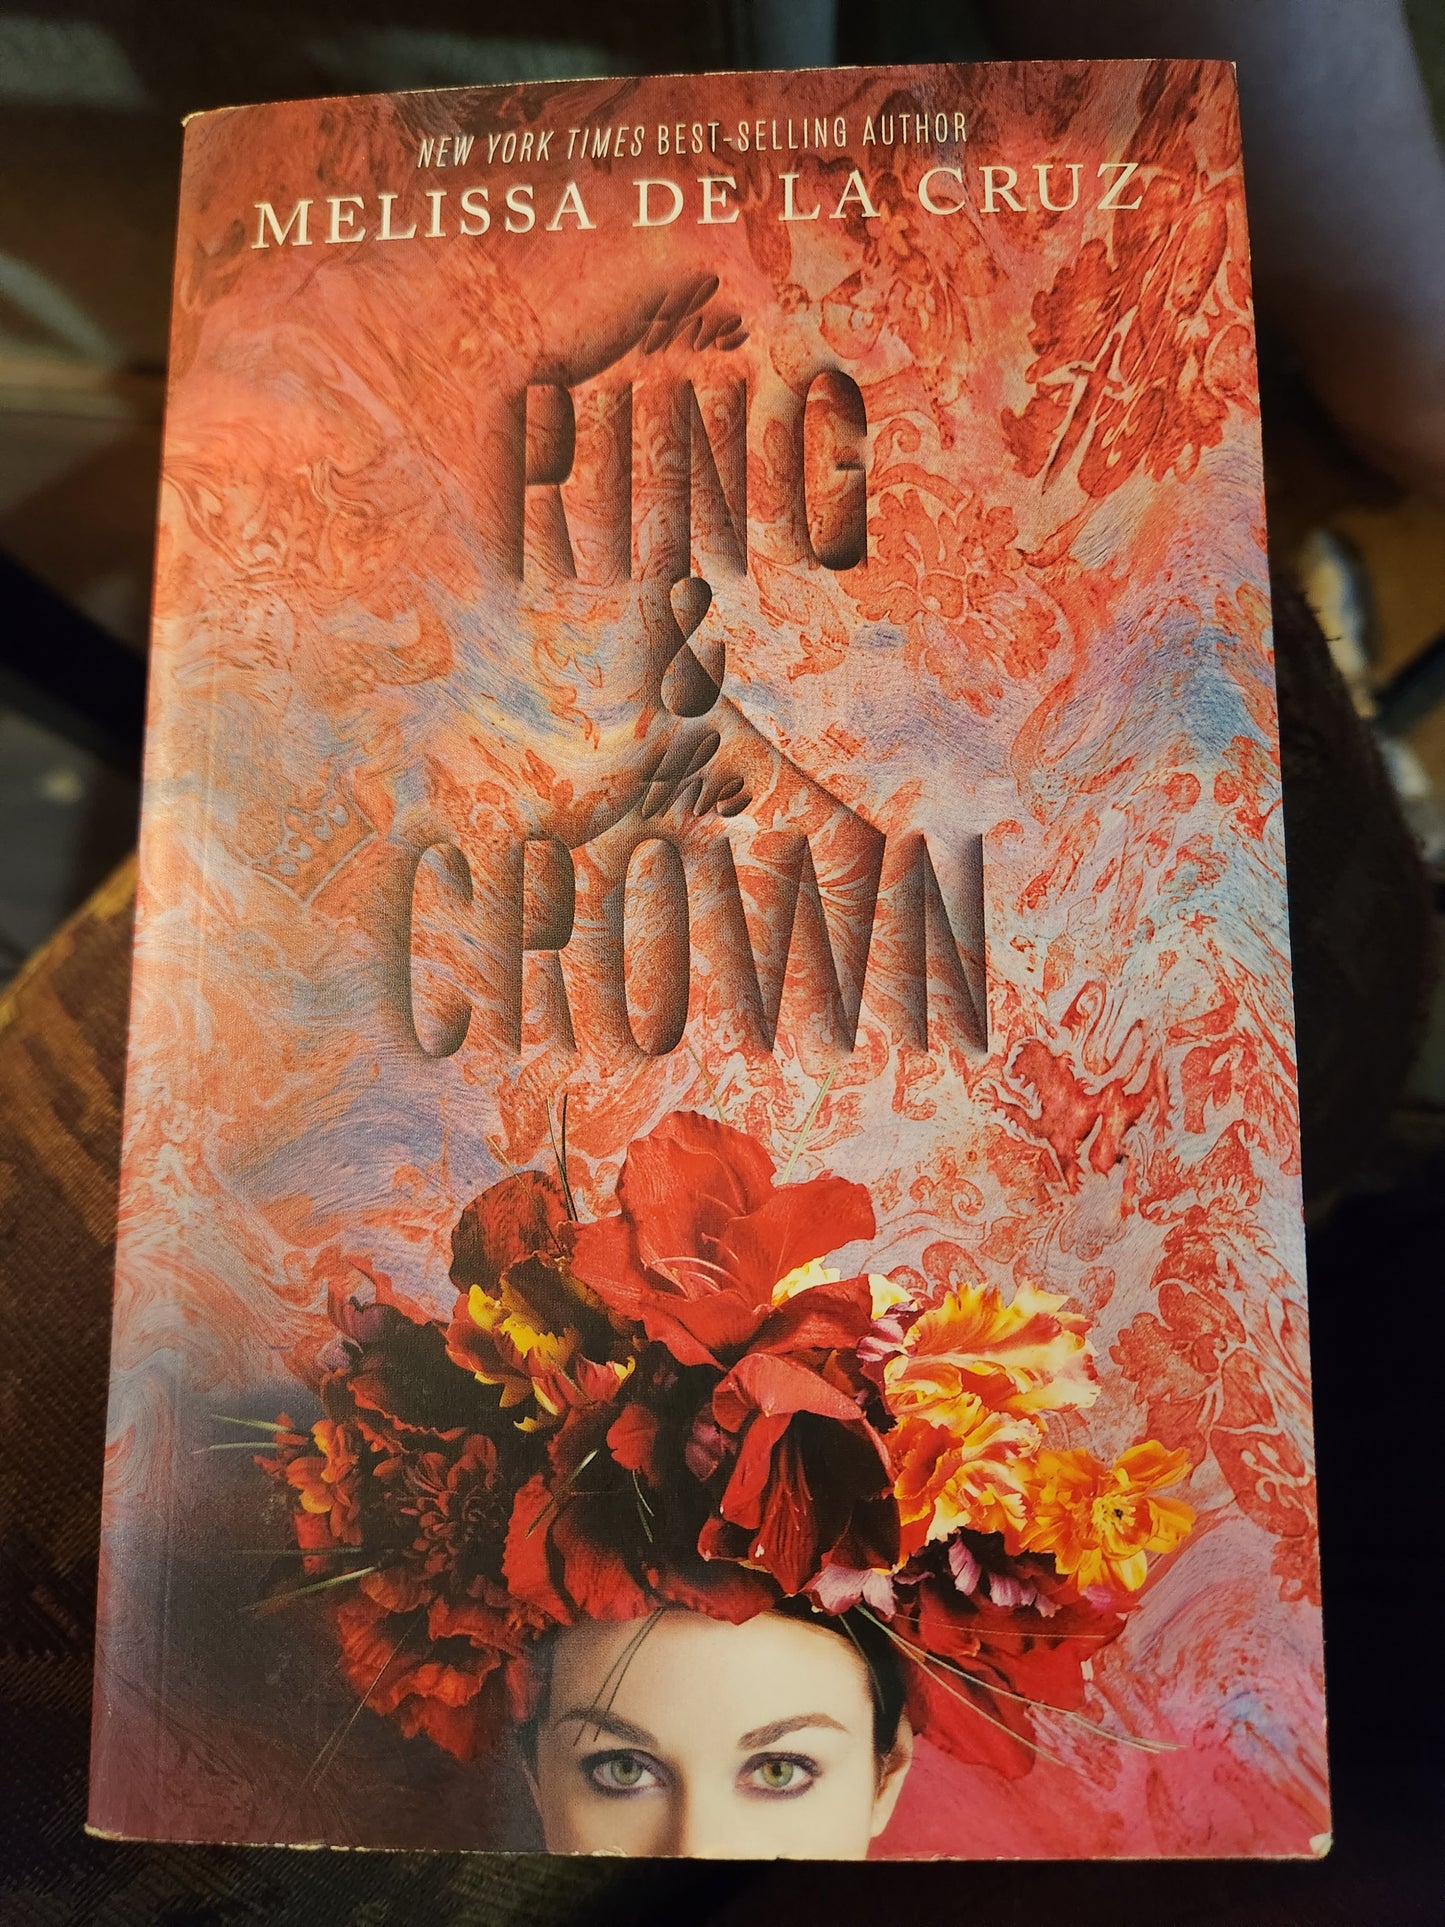 "The Ring & The Crown" by Melissa de la Cruz